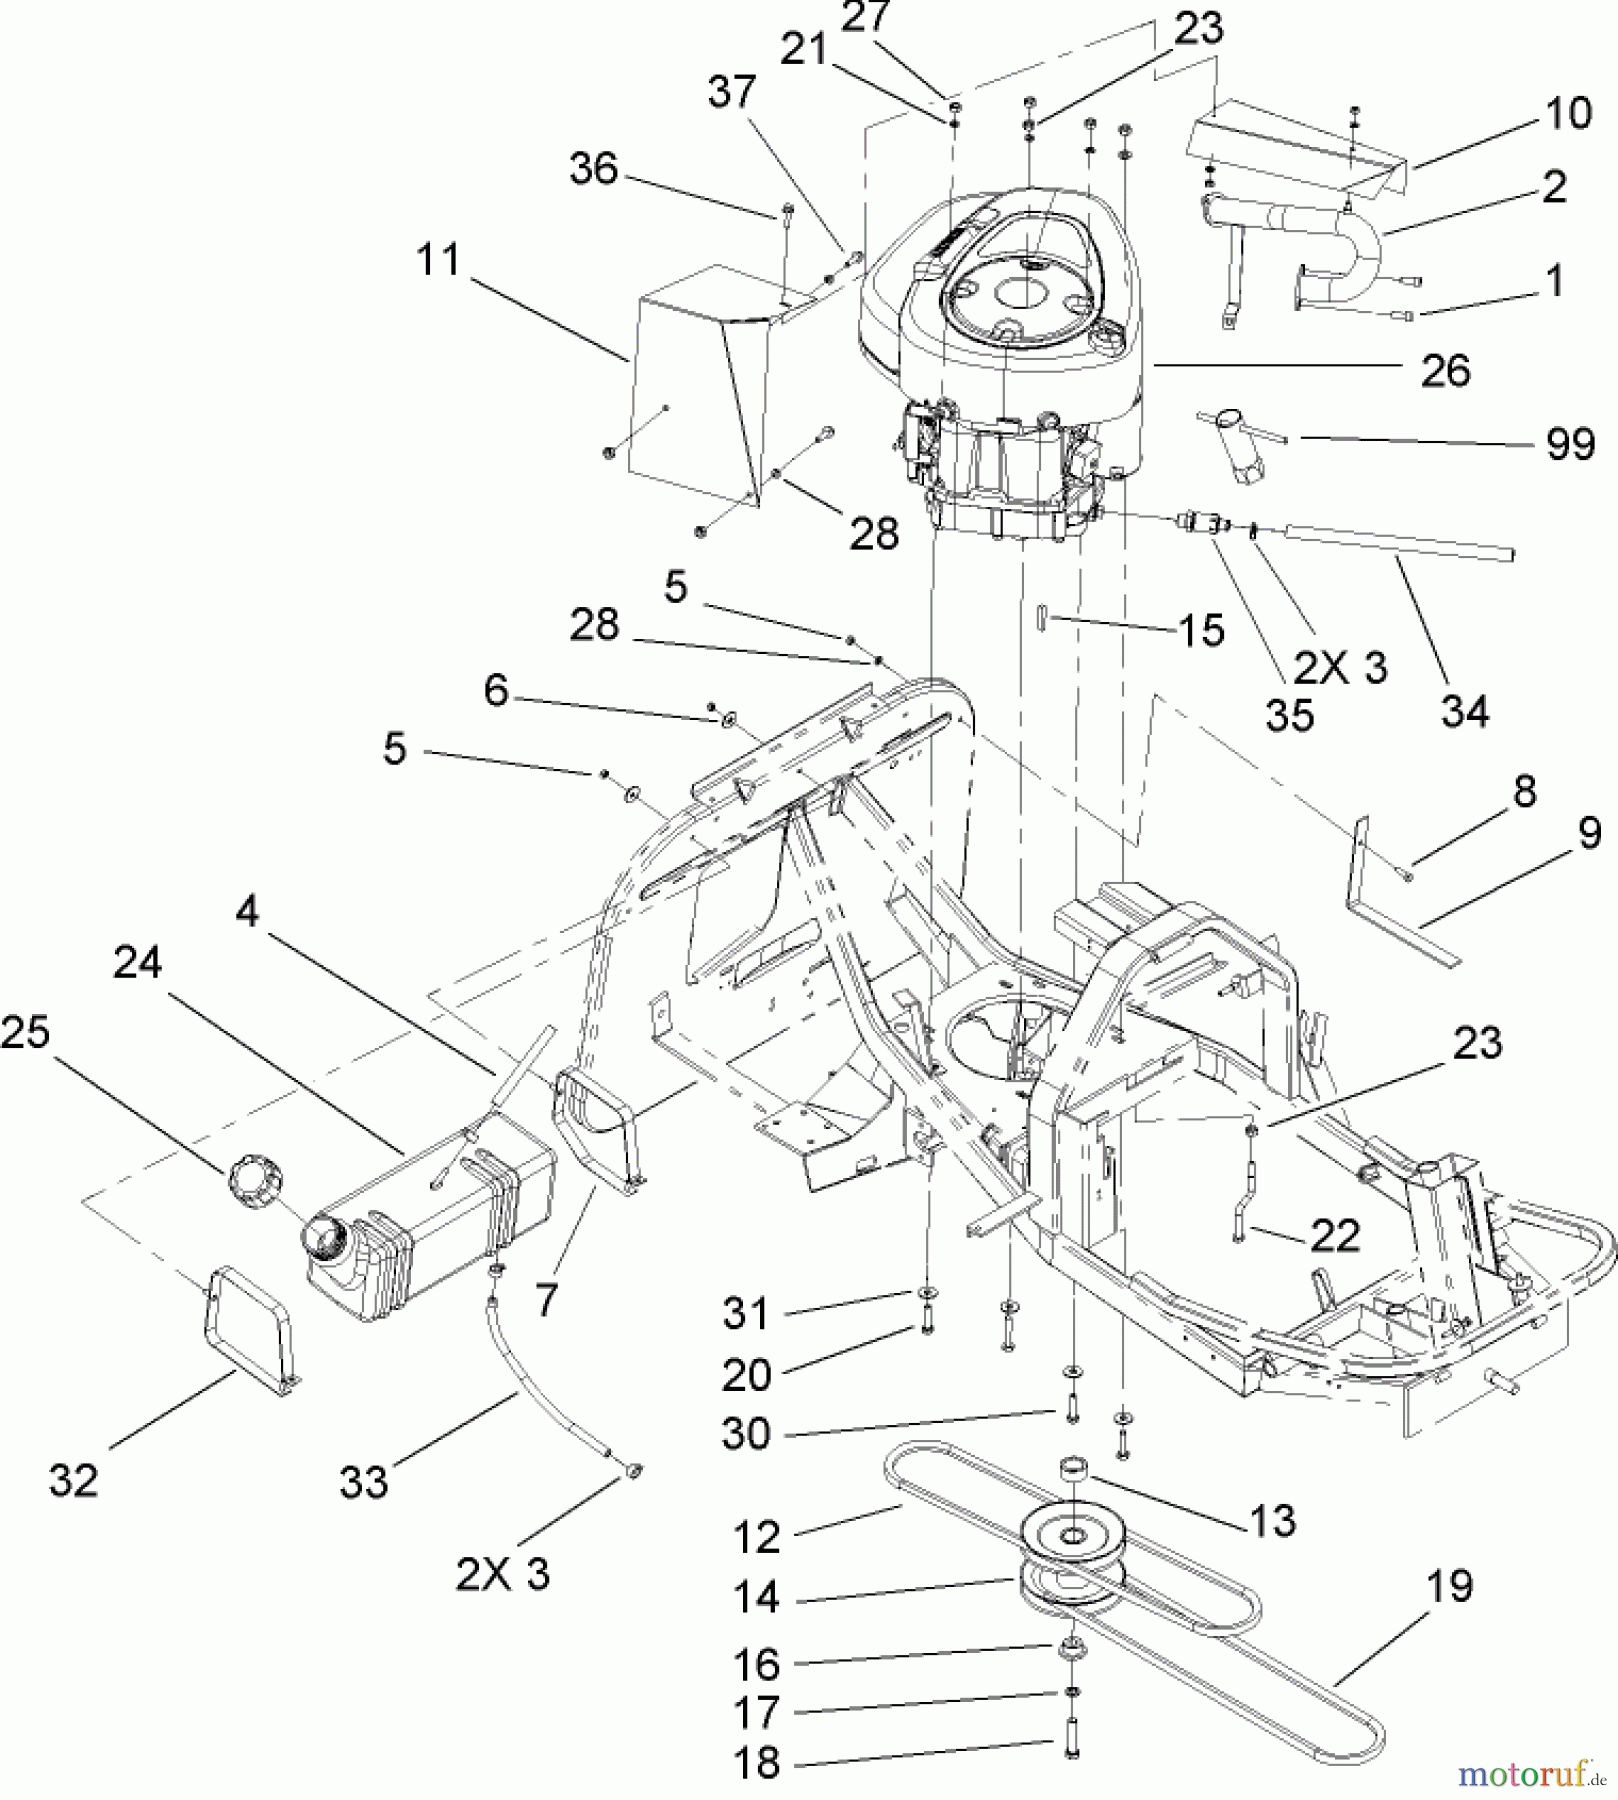  Toro Neu Mowers, Rear-Engine Rider 70186 (H132) - Toro H132 Rear-Engine Riding Mower, 2006 (260000001-260999999) ENGINE AND FUEL TANK ASSEMBLY